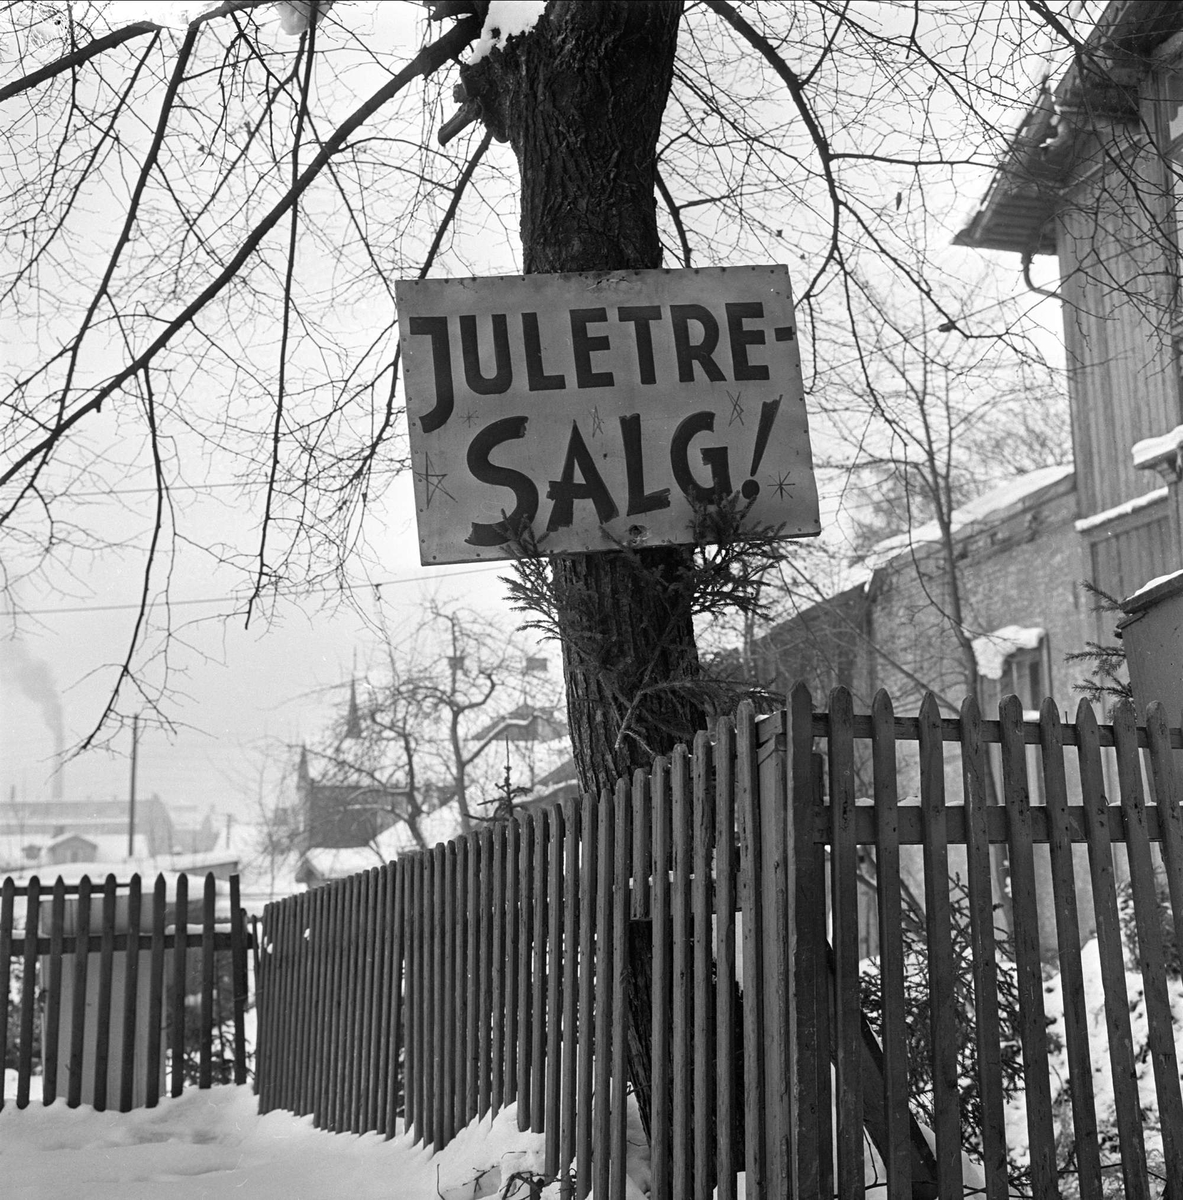 Salg av juletrær, Trondheimsveien, Oslo 03.01.1963.